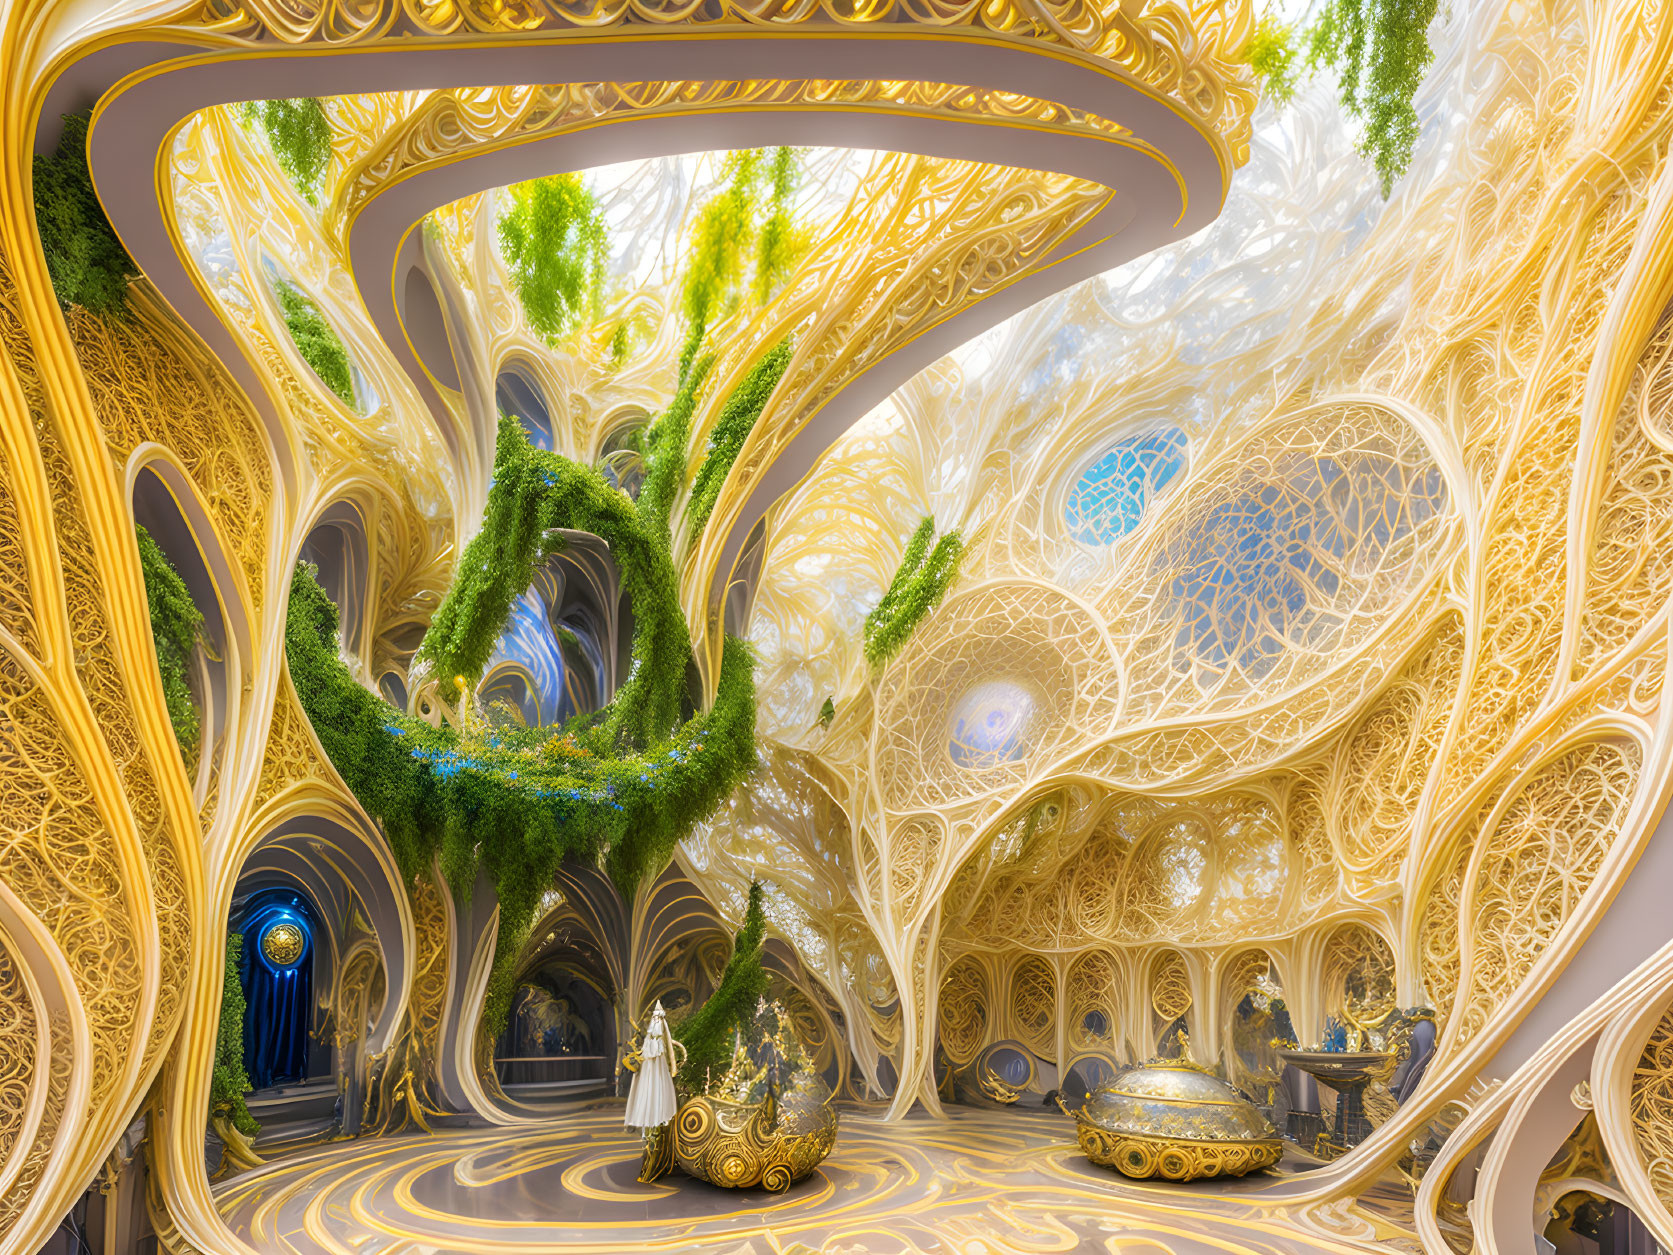 Enchanted Golden Garden: Whimsical Interior Design